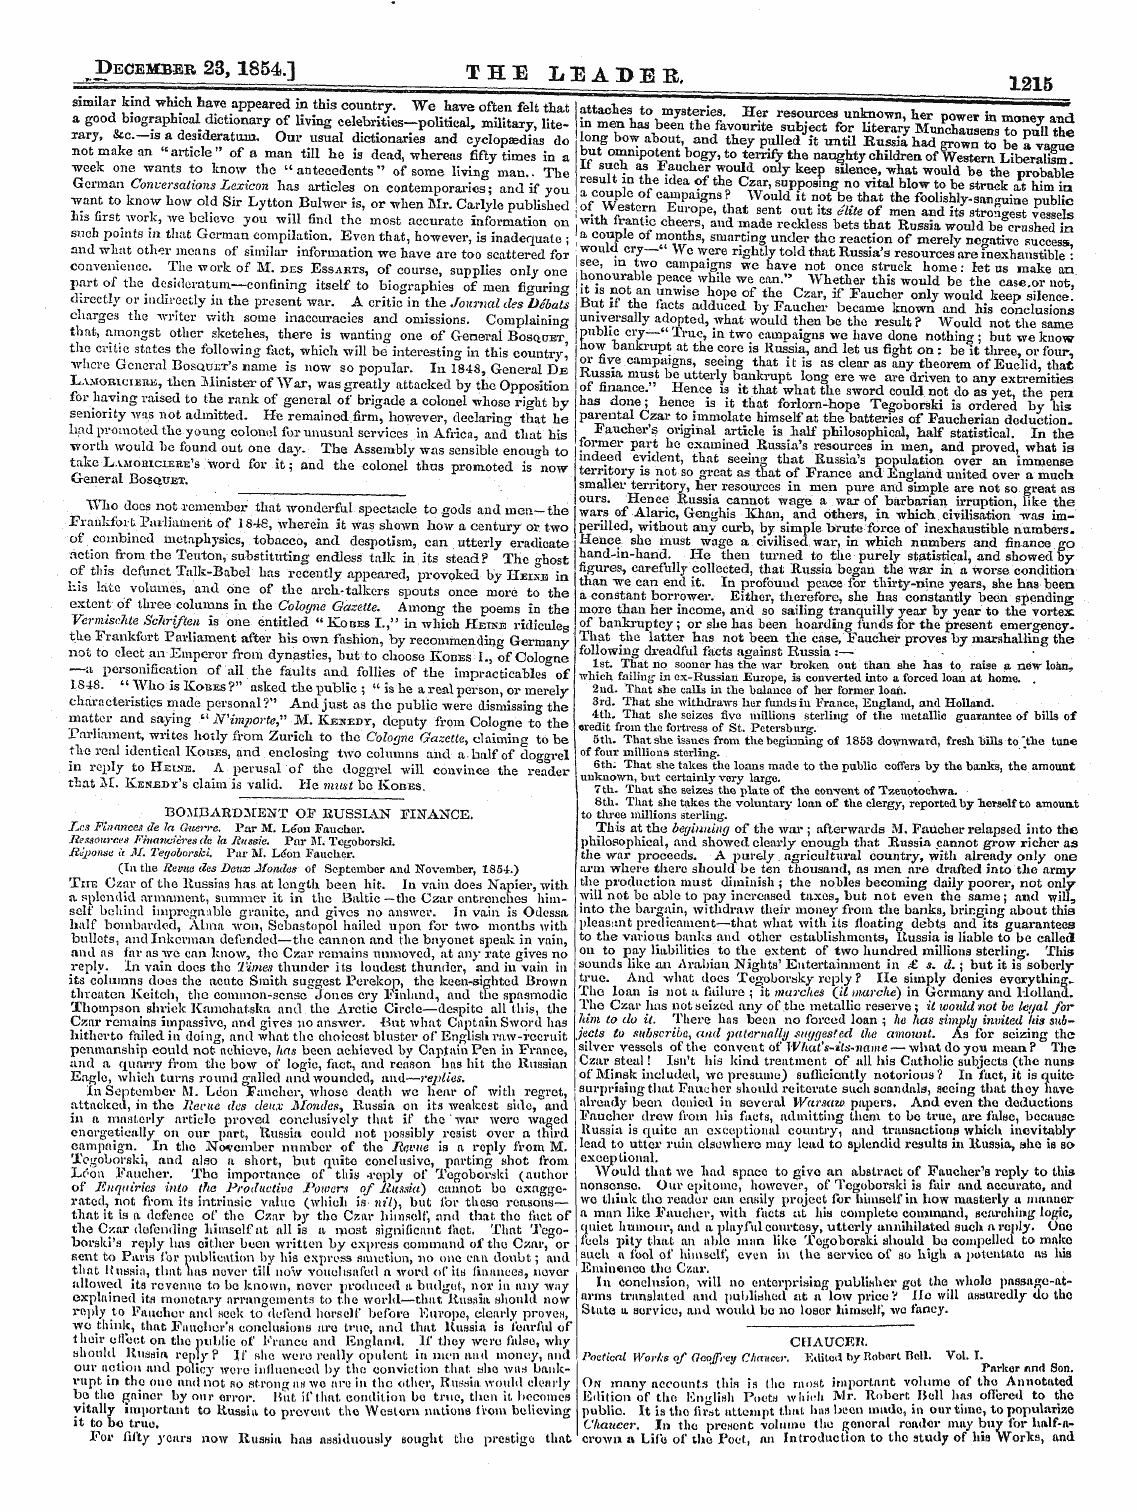 Leader (1850-1860): jS F Y, 2nd edition - Bomjbardment Op Russian Finance. Tics Fi...